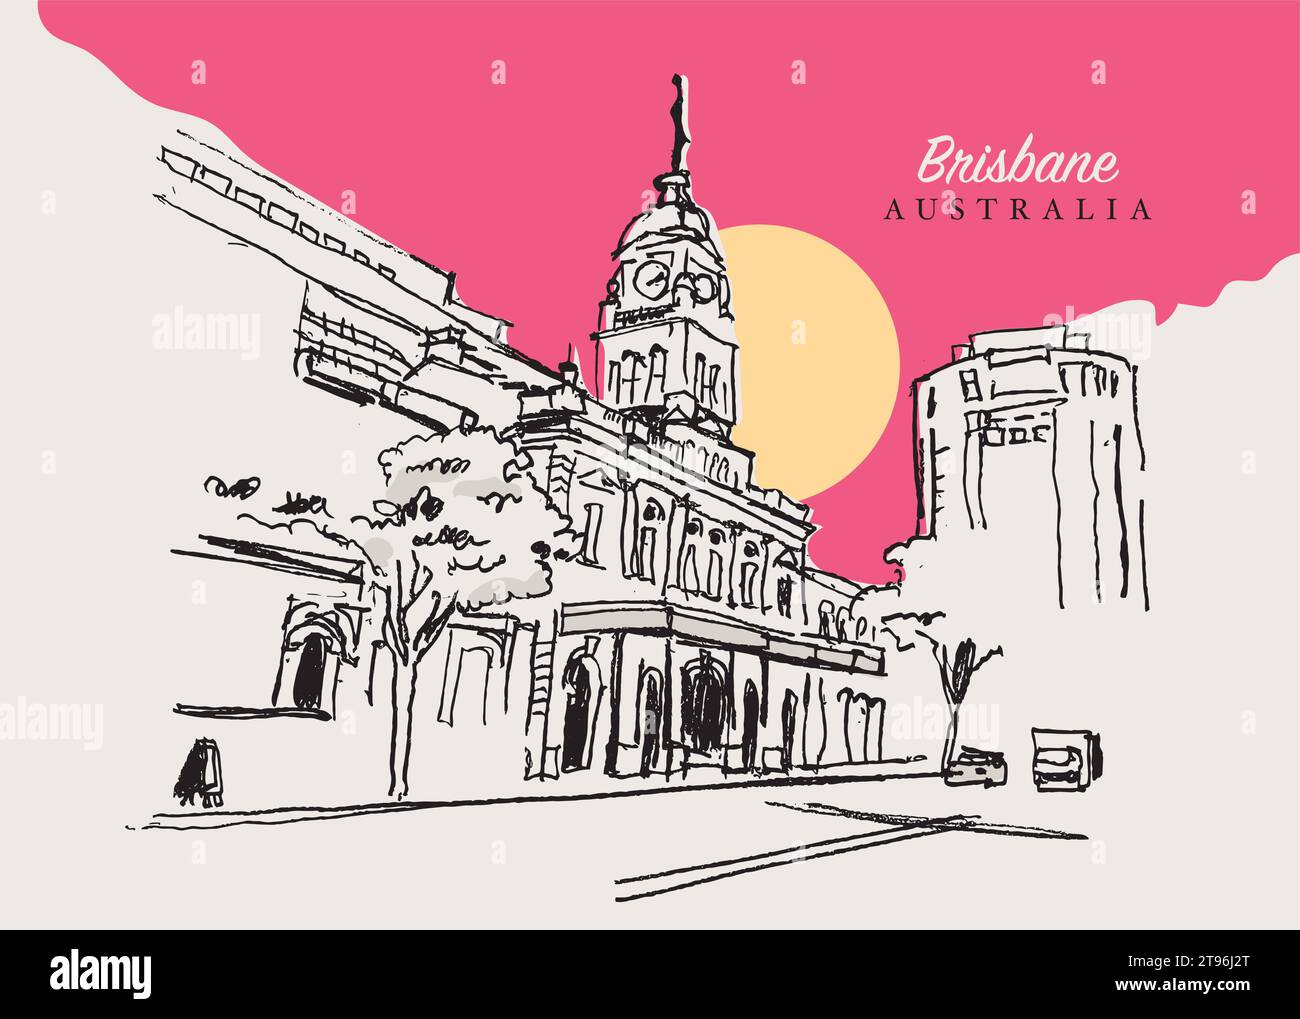 Illustration vectorielle dessinée à la main de la gare centrale de Brisbane, Queensland, Australie Illustration de Vecteur